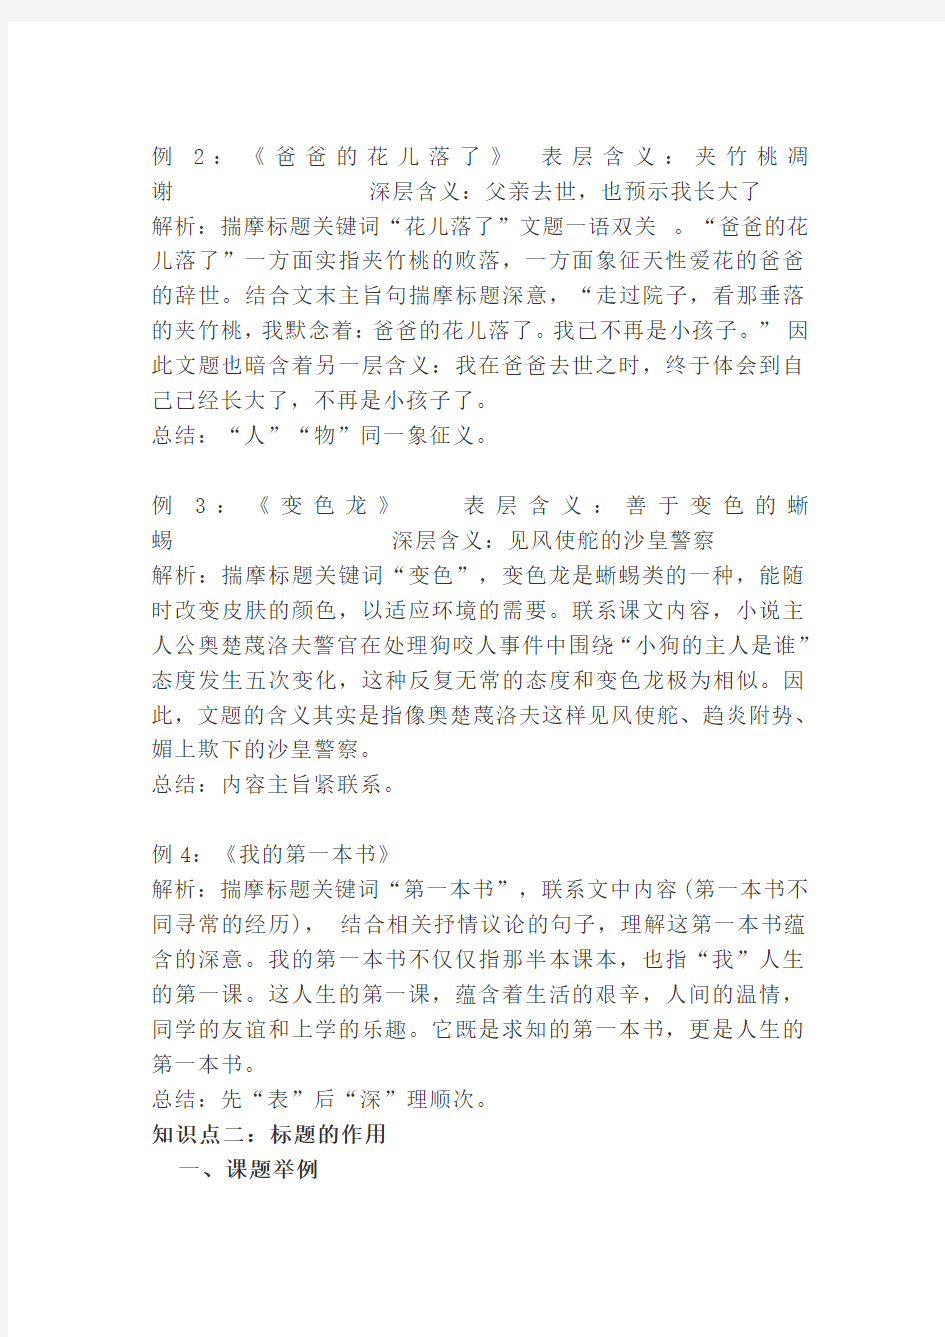 初中语文阅读理解文章标题的含义和作用